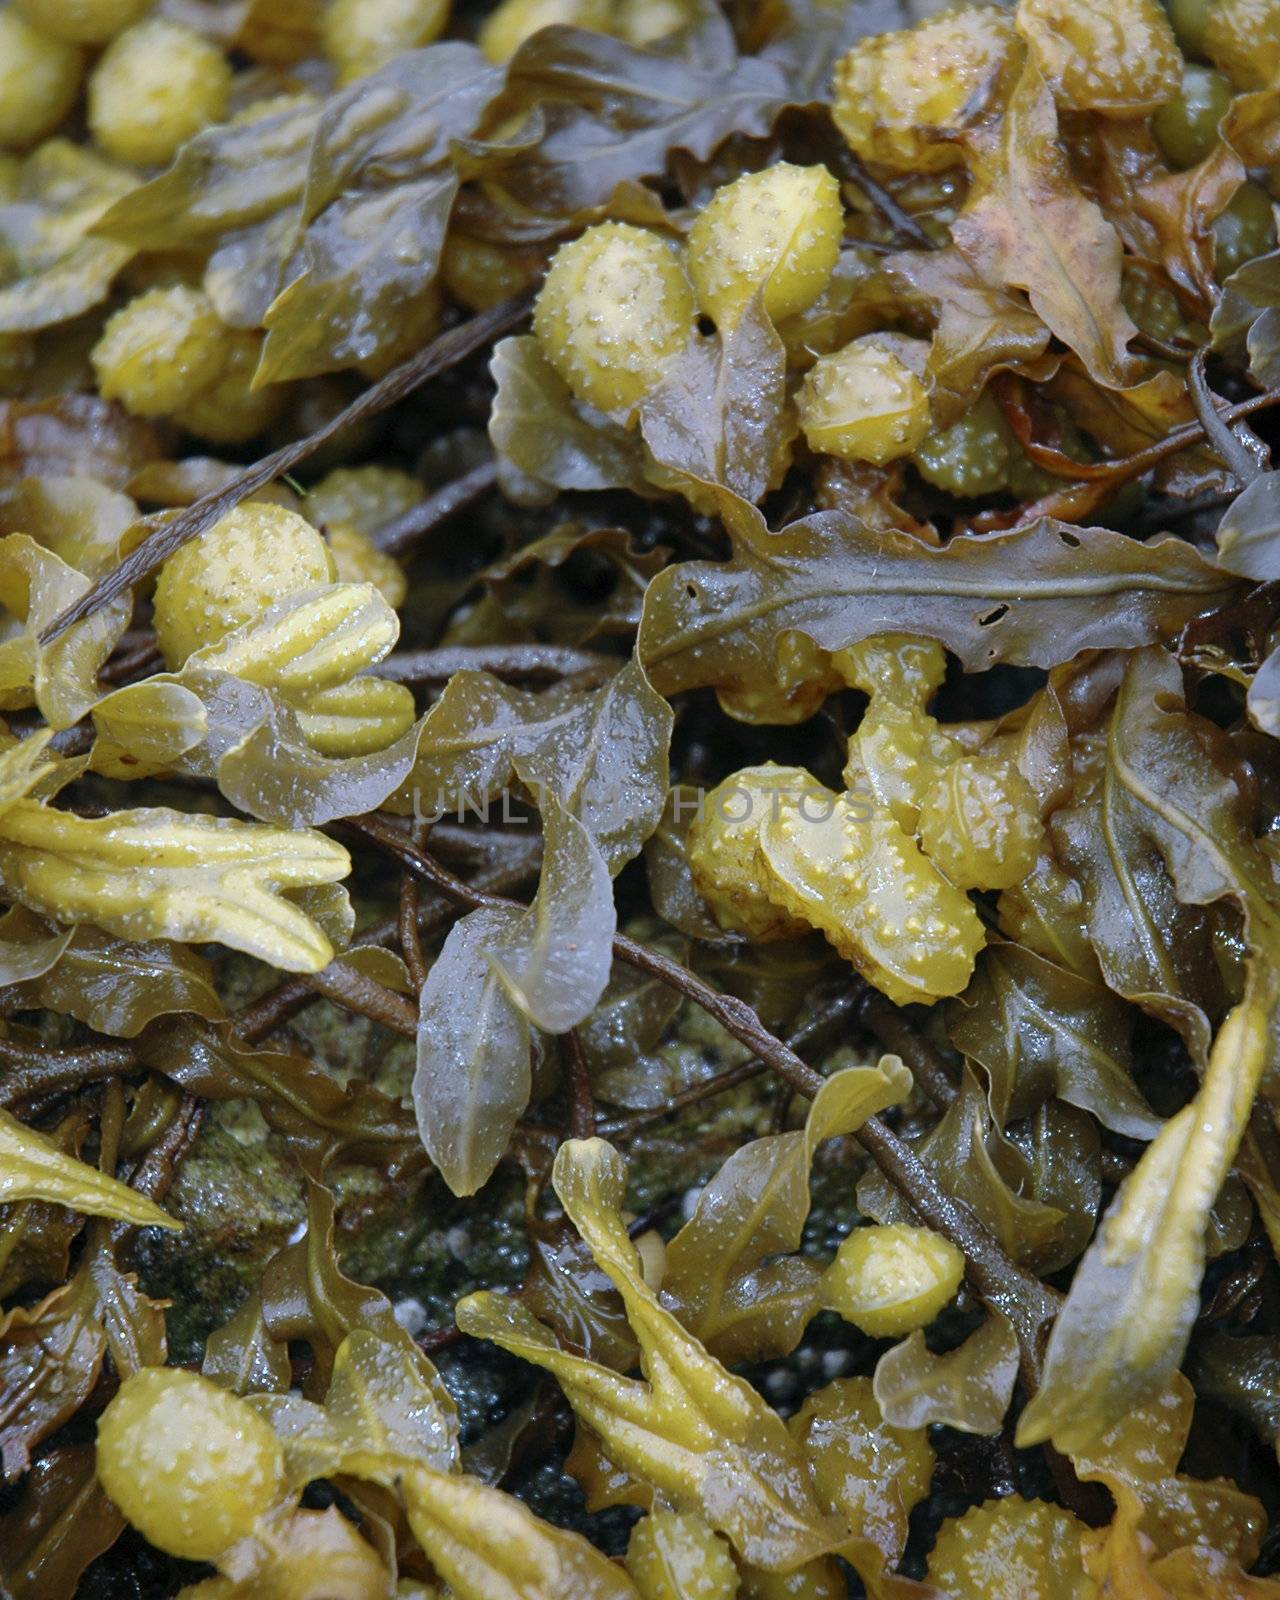 Bladderwrack Seaweed by TimAwe